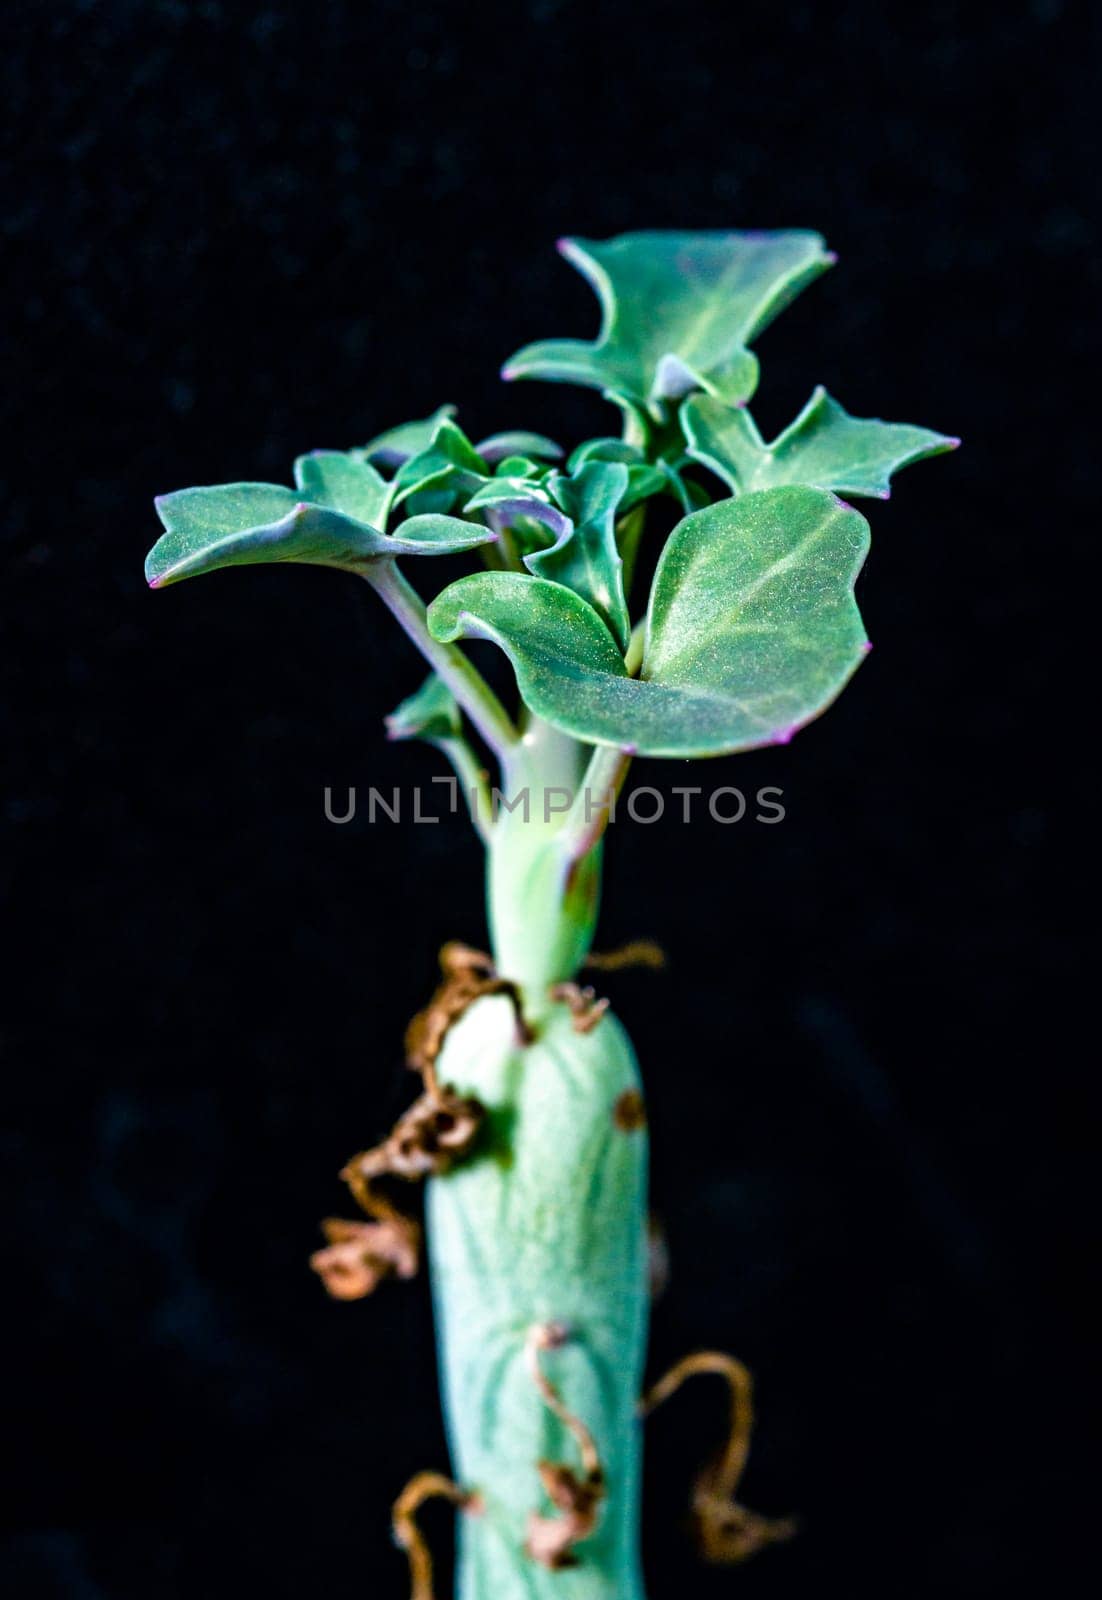 Senecio articulata - succulent plant with thick succulent leaves